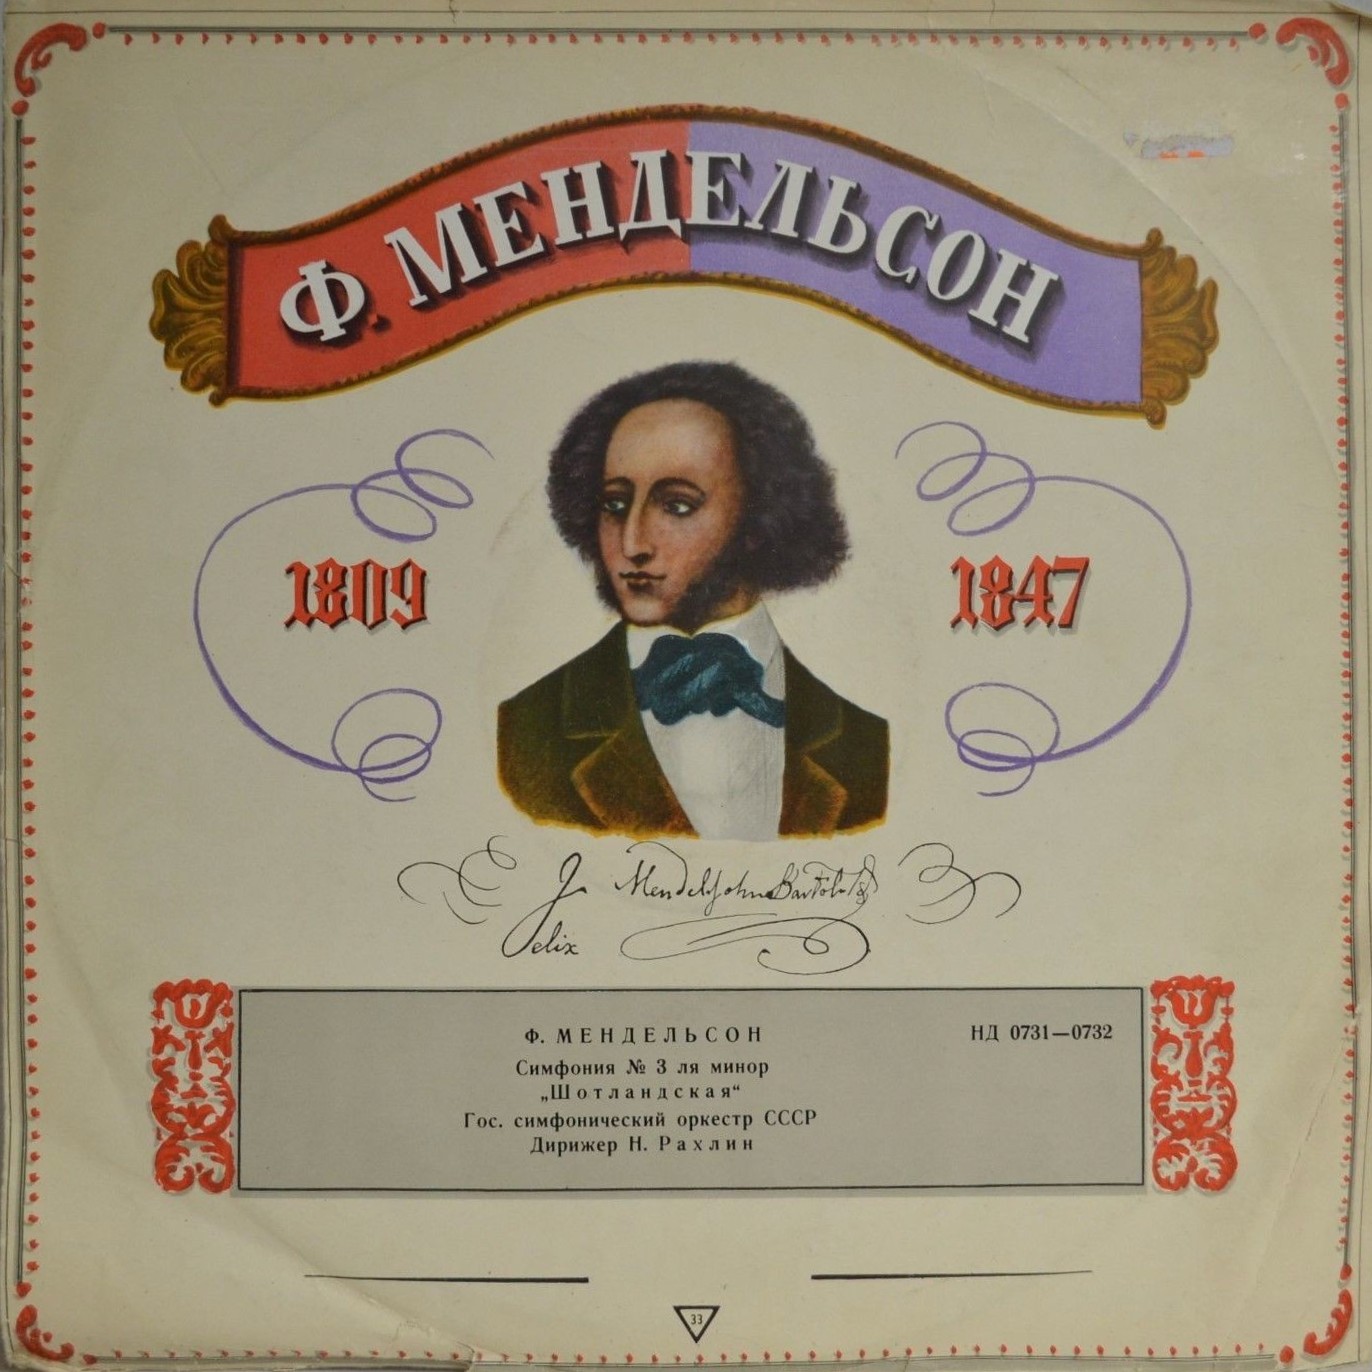 Ф. МЕНДЕЛЬСОН (1809–1847): Симфония № 3 ля минор, соч. 56, (Н. Рахлин)